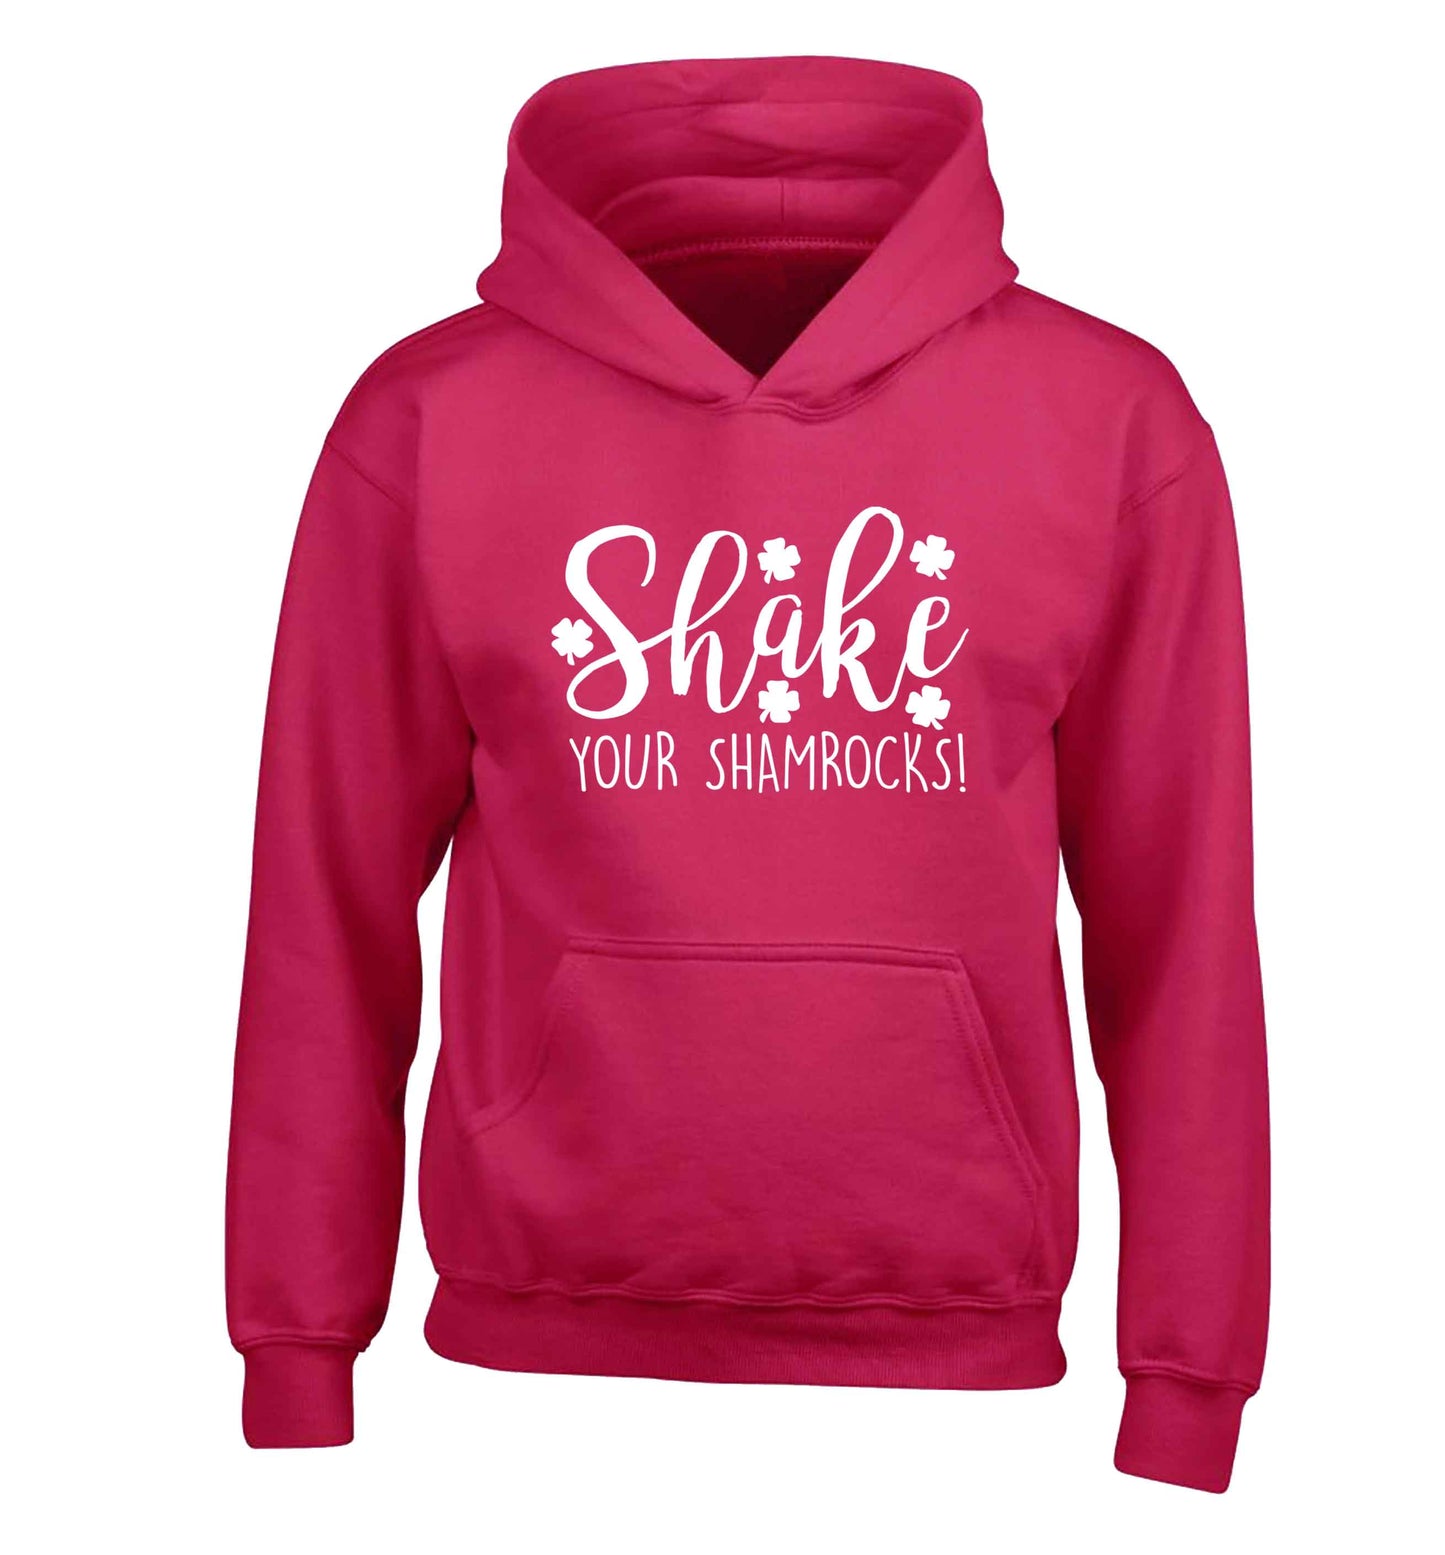 Shake your shamrocks children's pink hoodie 12-13 Years